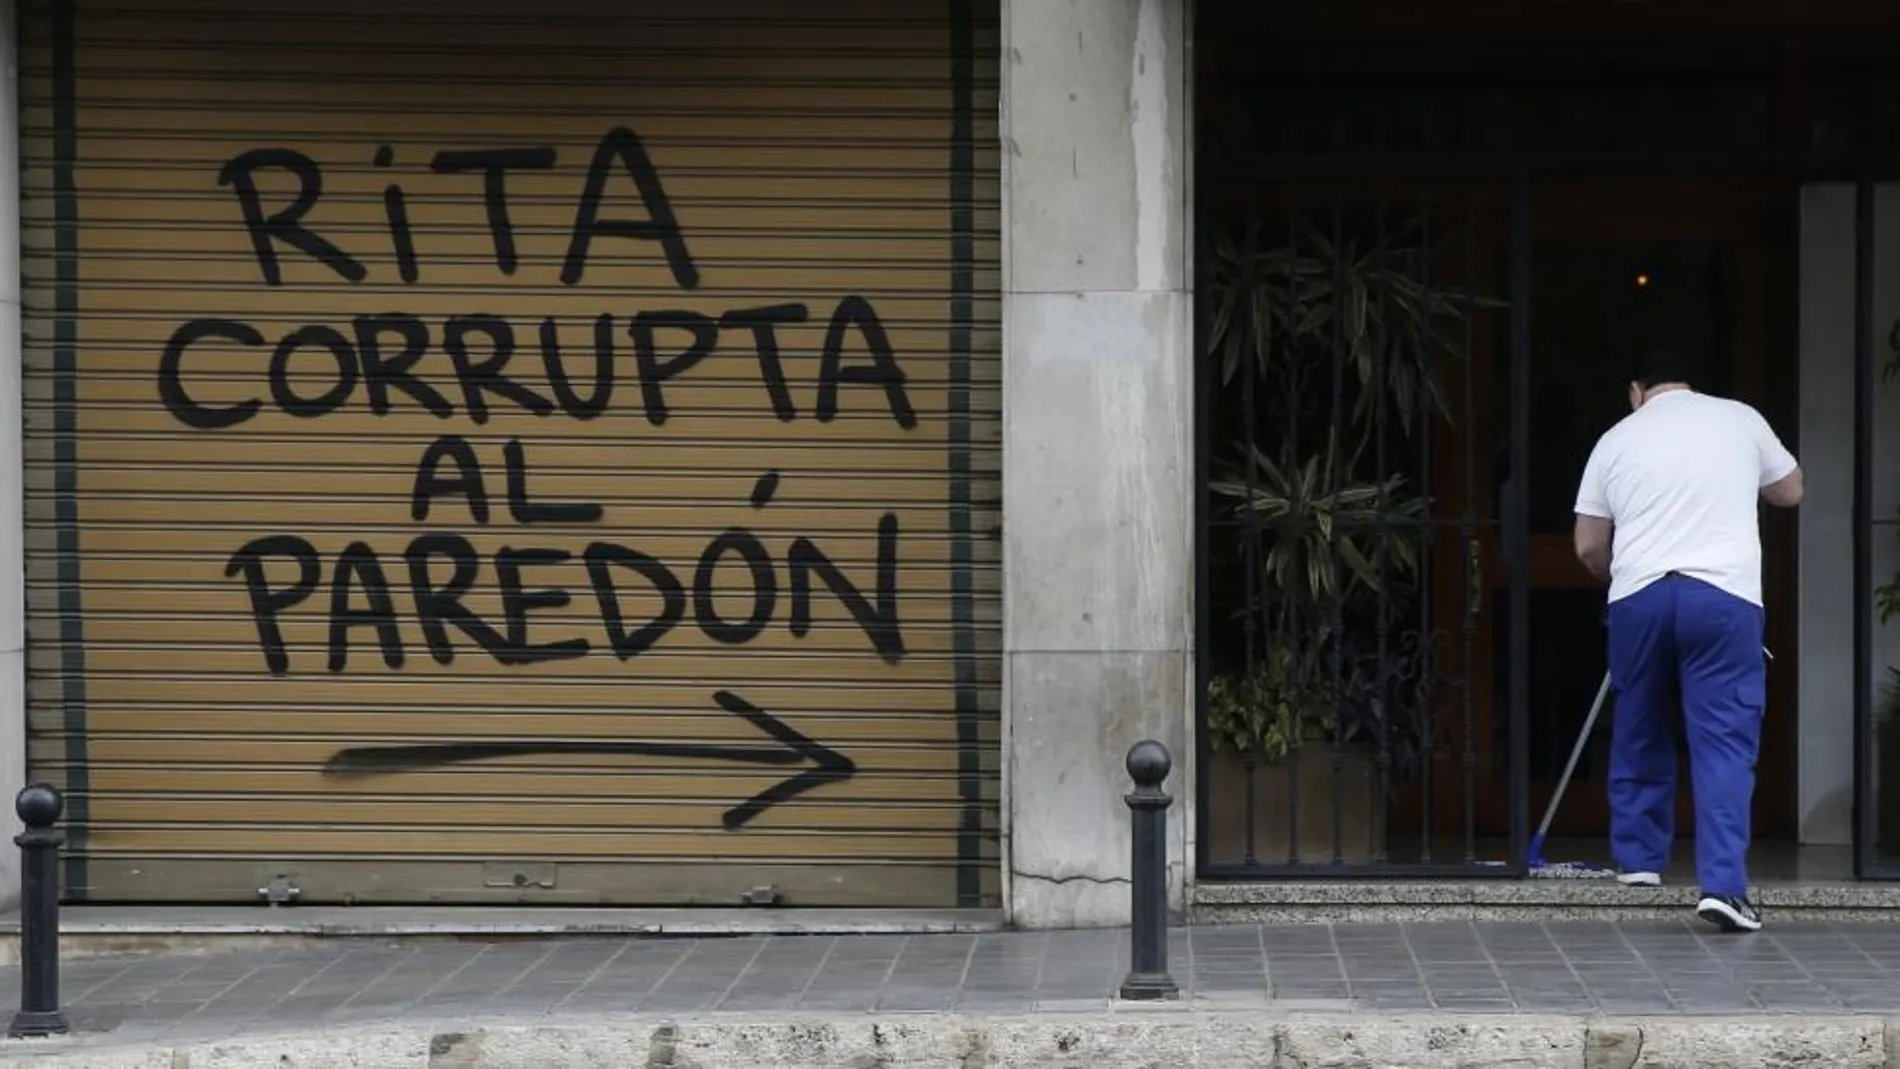 Una gran pintada con el lema "Rita corrupta al paredón"en el domicilio de la ex alcaldesa de valencia Rita Barberá.